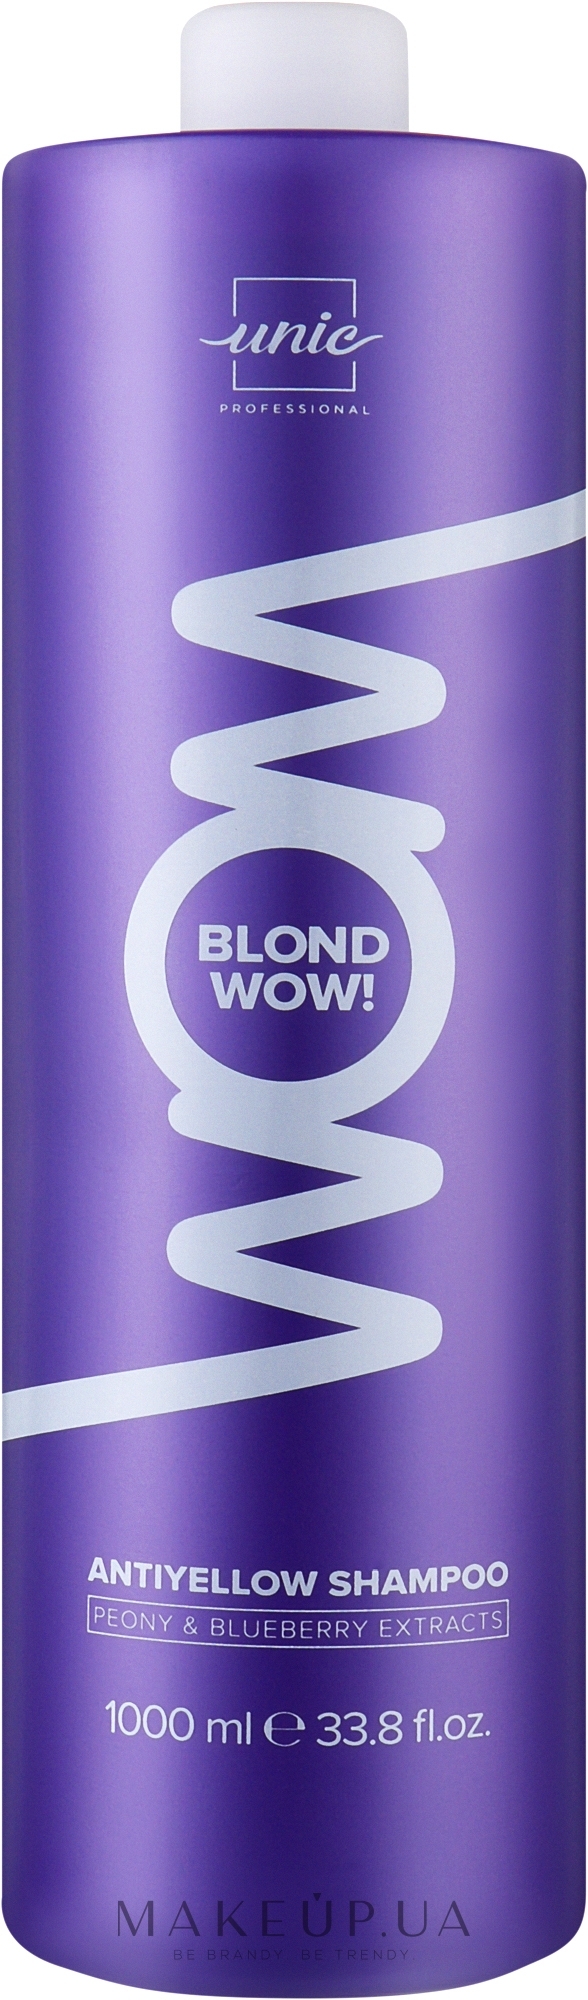 Шампунь для волос - Unic Wow Blonde Antiyellow Shampoo — фото 1000ml